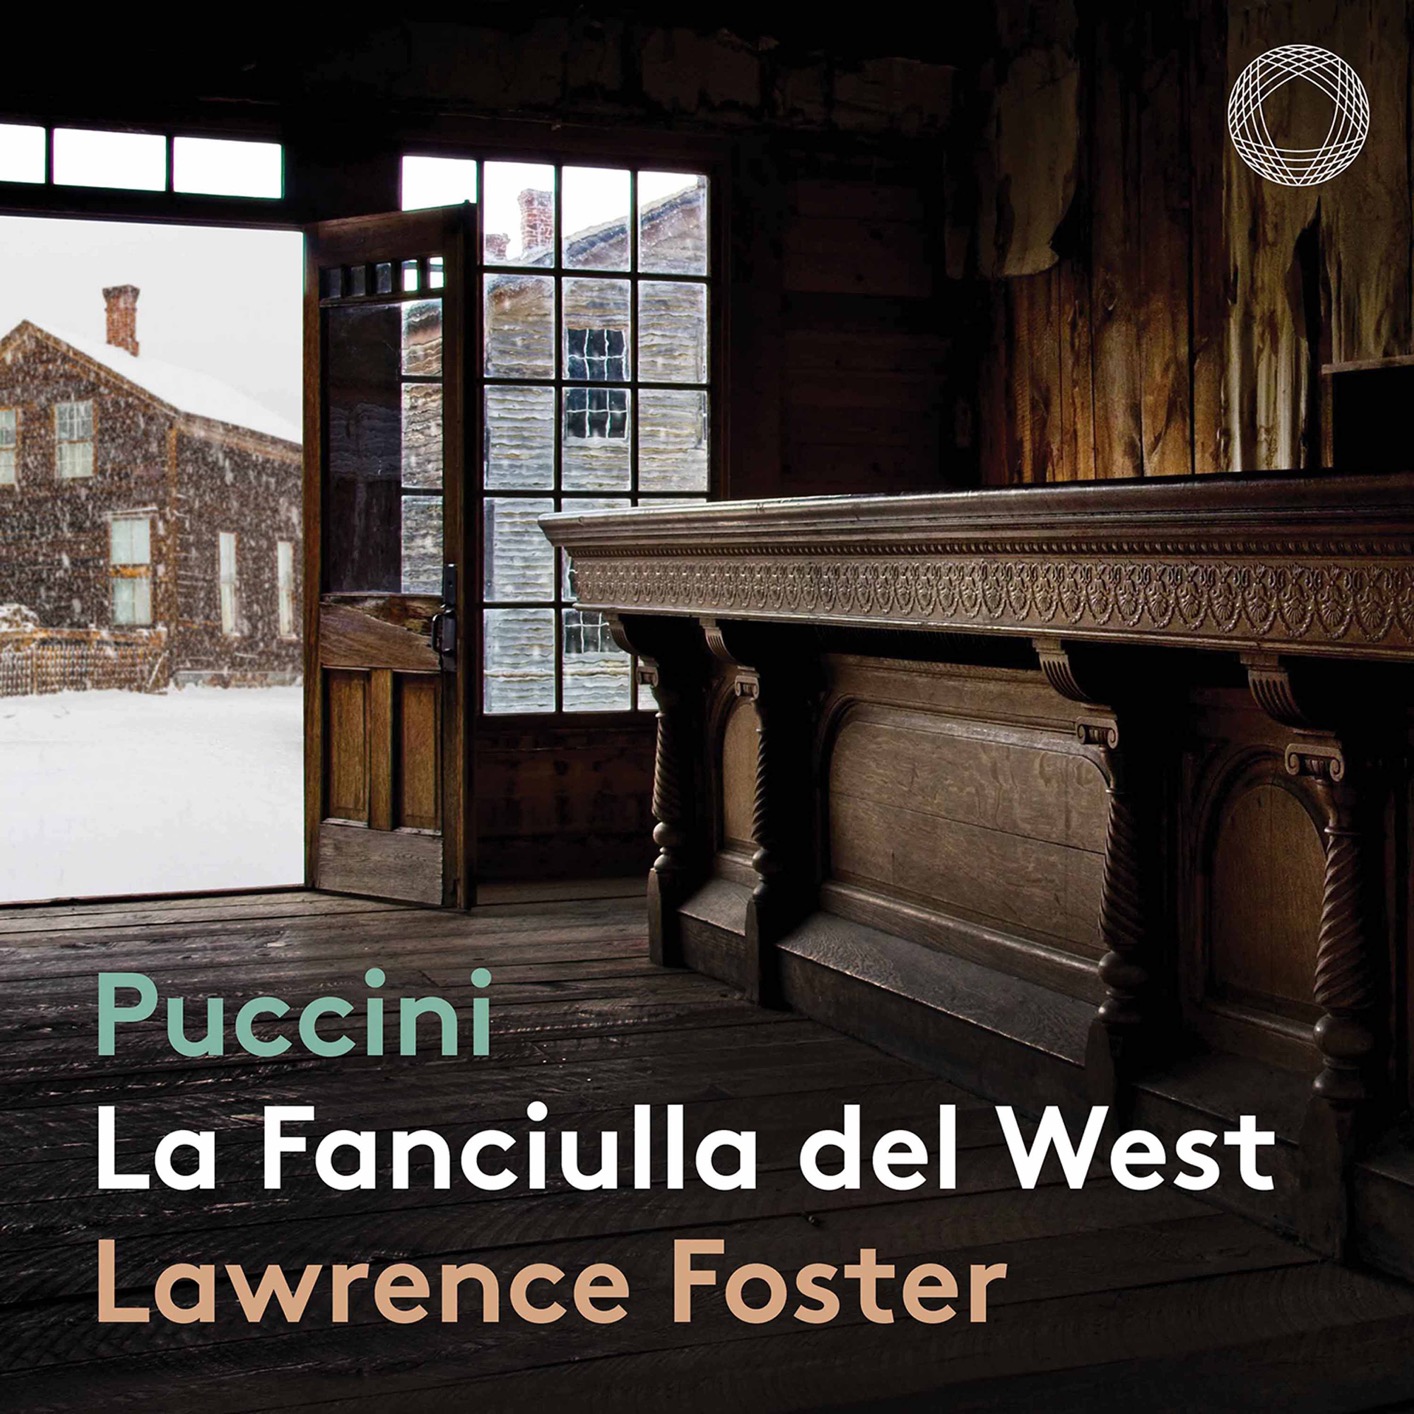 Transylvania State Philharmonic Orchestra & Lawrence Foster - Puccini - La fanciulla del West, SC 78 (2021) [FLAC 24bit/96kHz]